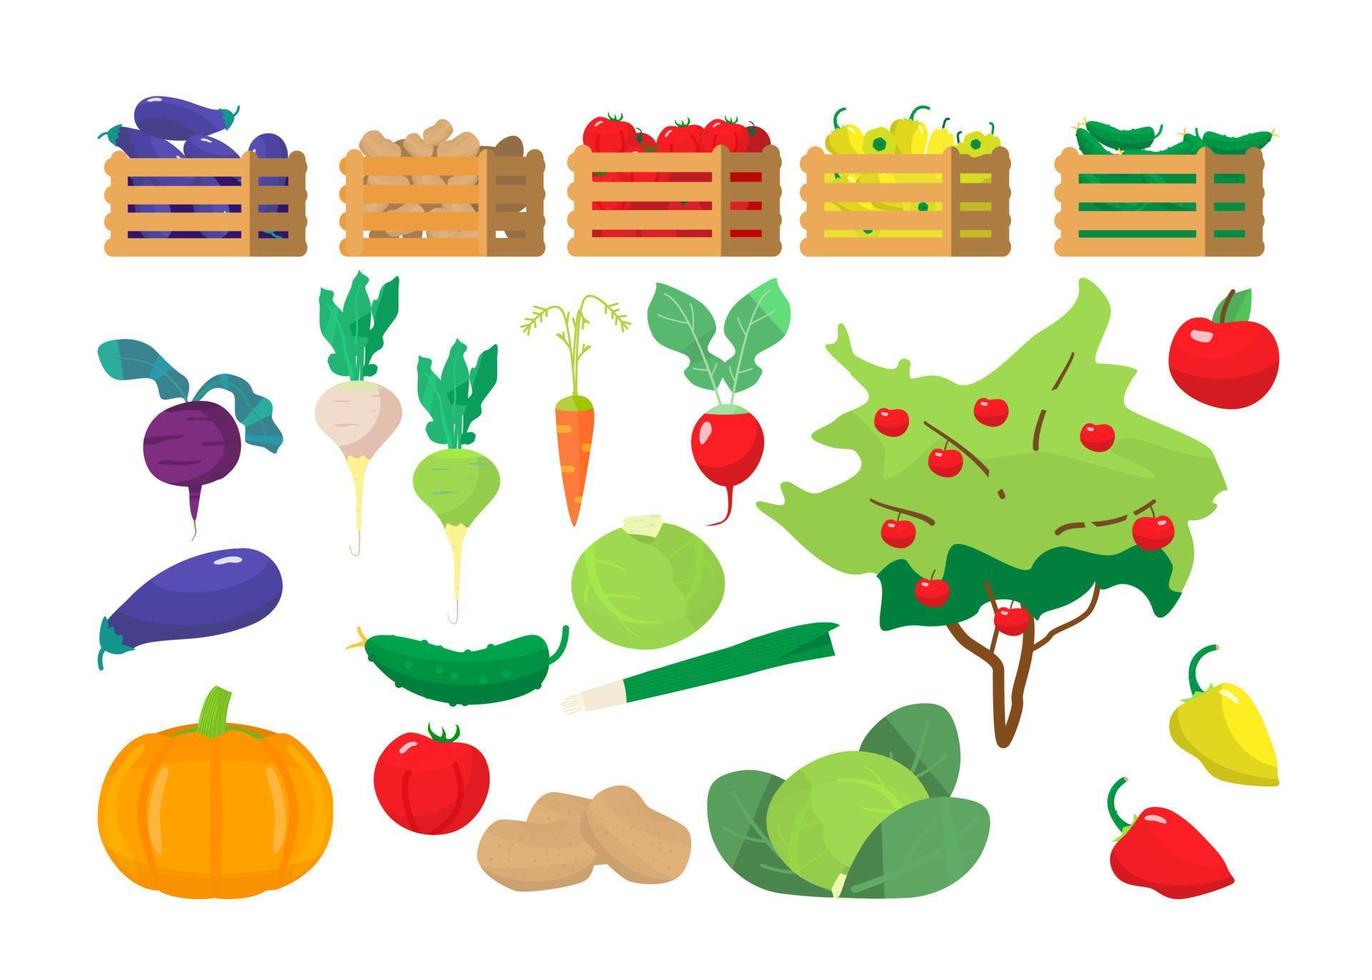 conjunto vetorial de legumes e caixas de madeira com eles. berinjelas, batatas, tomates, pimentões, pepinos. árvore de maçã. vetor